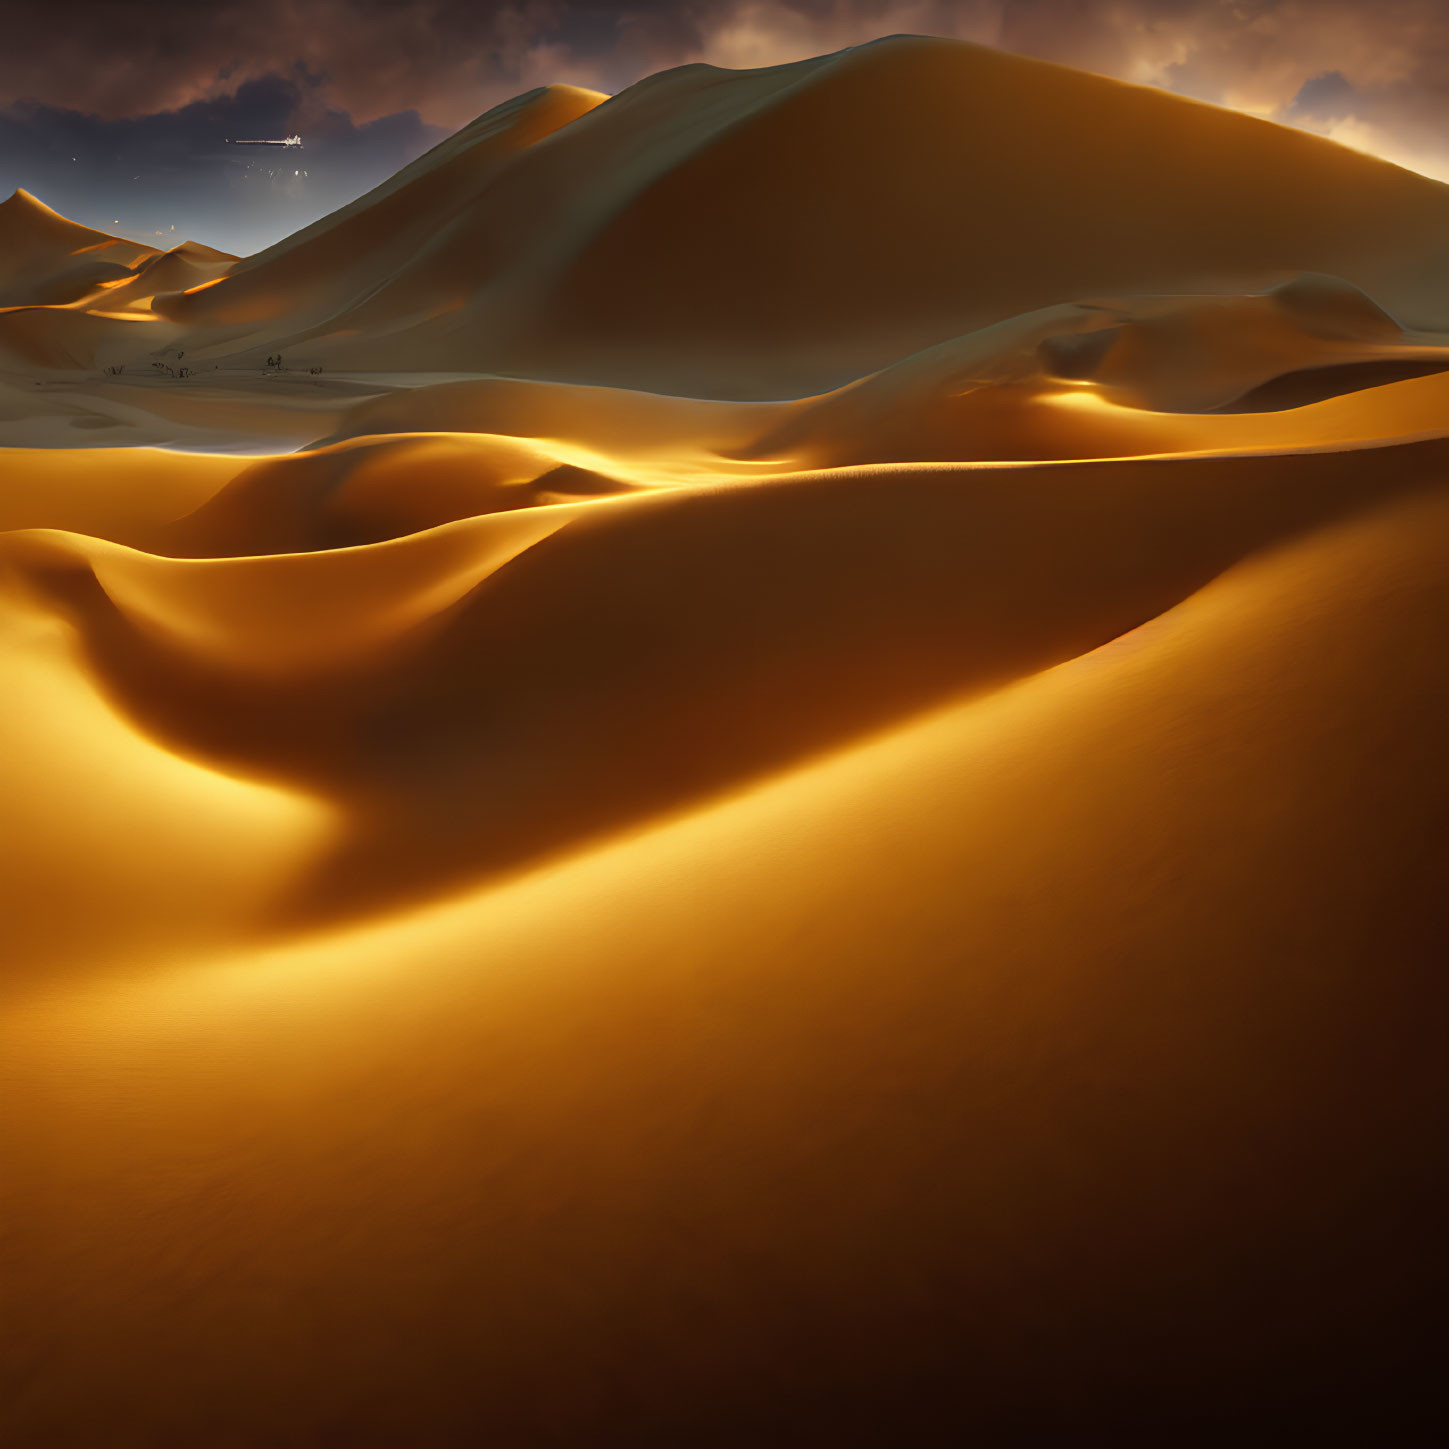 Vast desert beauty: golden sand dunes under dramatic sky